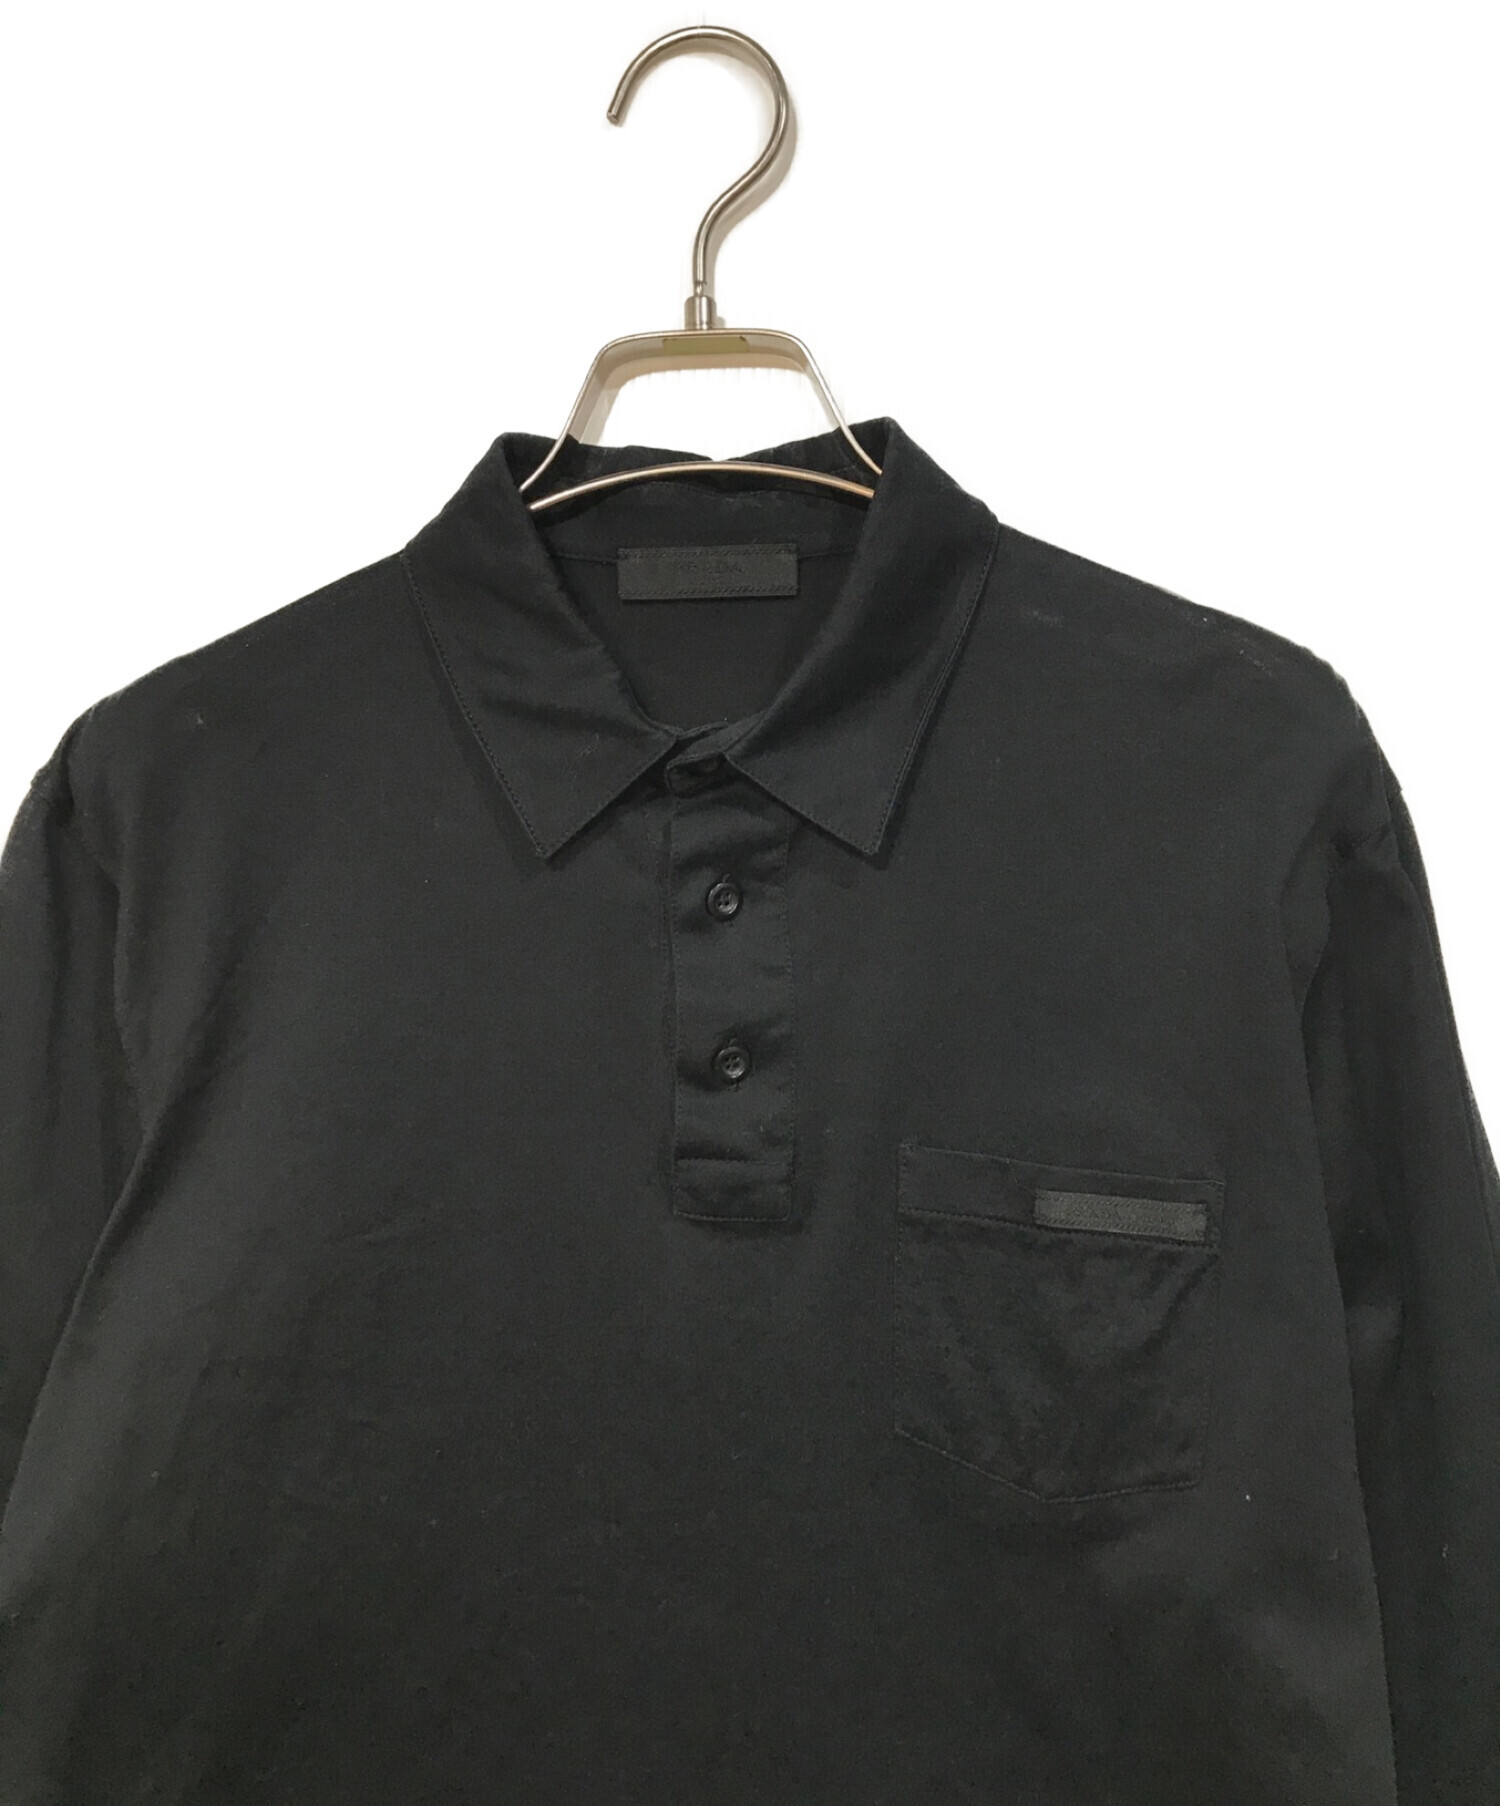 PRADA (プラダ) L/Sポロシャツ ブラック サイズ:S